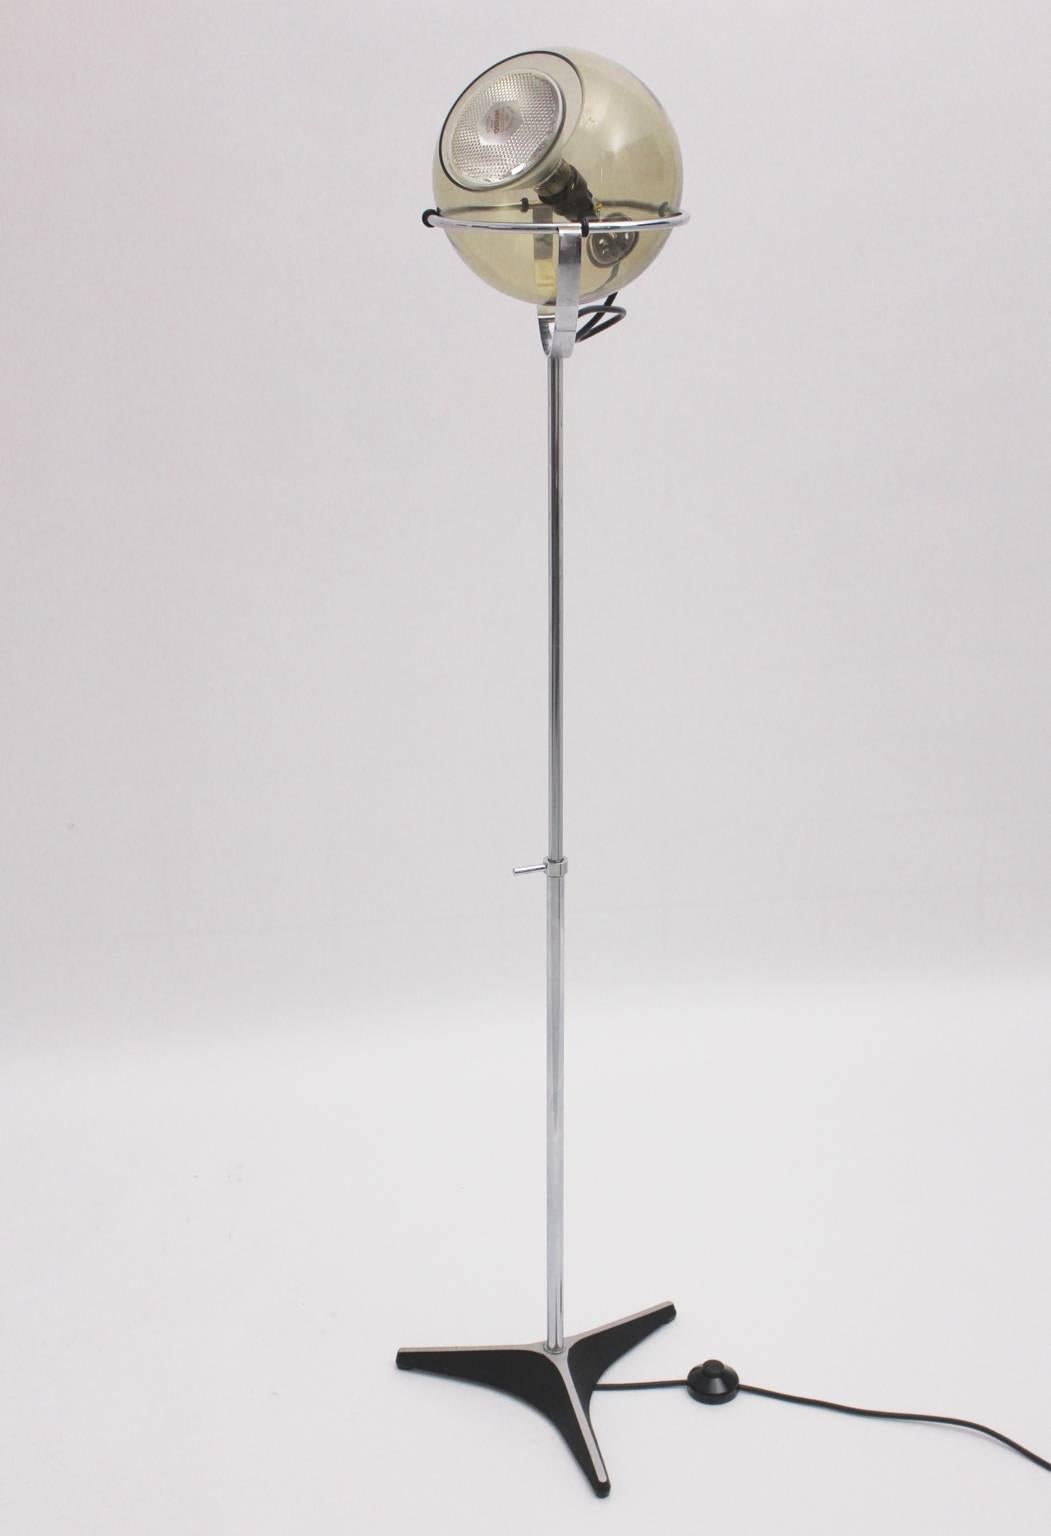 Lampadaire vintage Space Age conçu par Frank Lightelijn pour l'Atelier Raak, 1961, Amsterdam, Pays-Bas.
Le lampadaire présente un  trépied pied en aluminium laqué noir et tube en acier chromé, qui comporte un globe en verre pivotant avec une douille